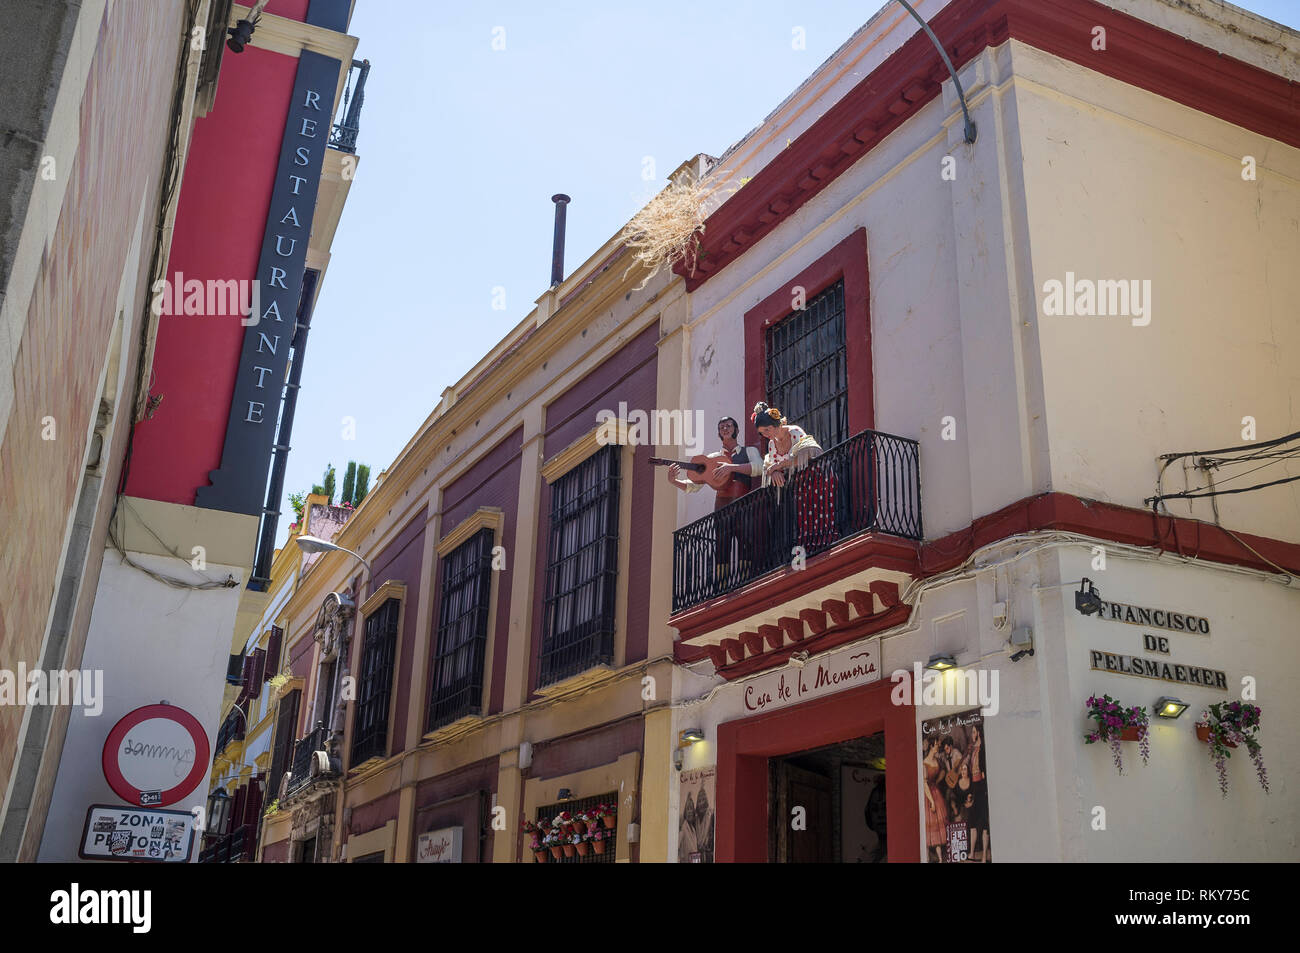 Maniquíes de un hombre tocando guitarra y una mujer con traje flamenco posaron en el balcón de la primera planta de una tienda en Sevilla. Foto de stock